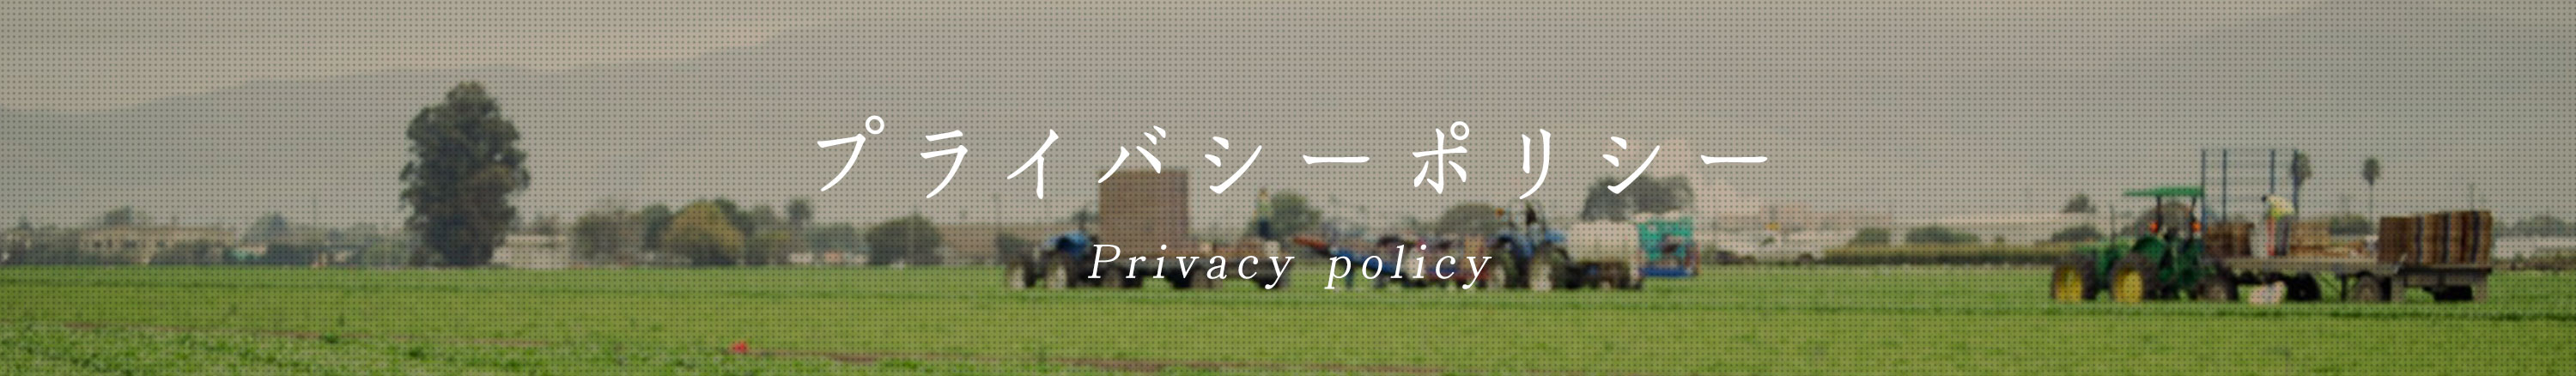 プライバシーポリシートップのイメージ画像